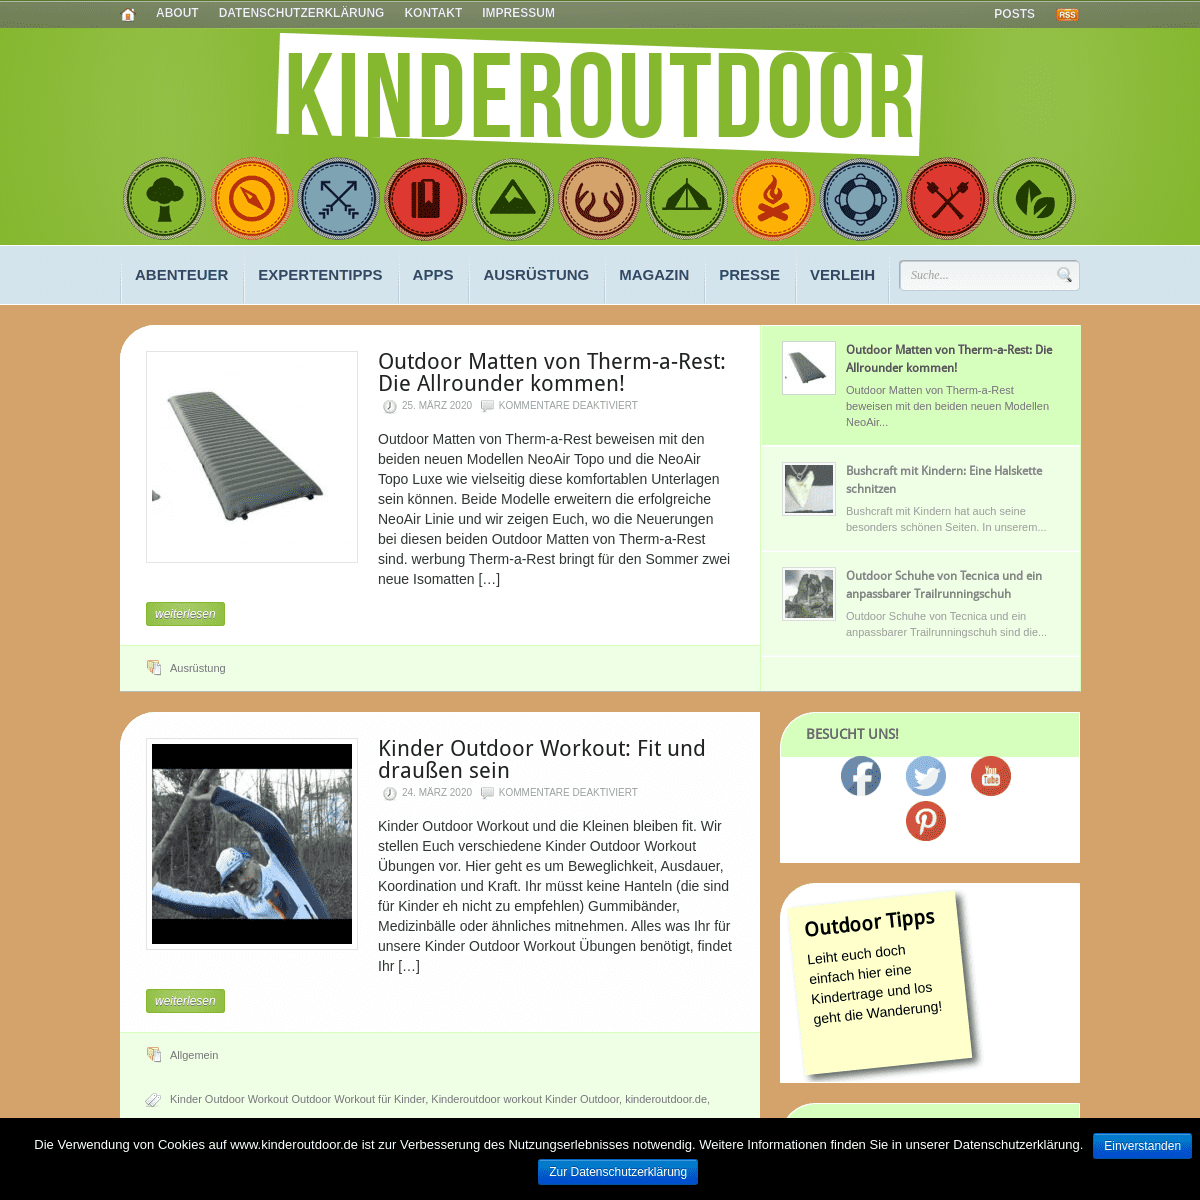 A complete backup of kinderoutdoor.de